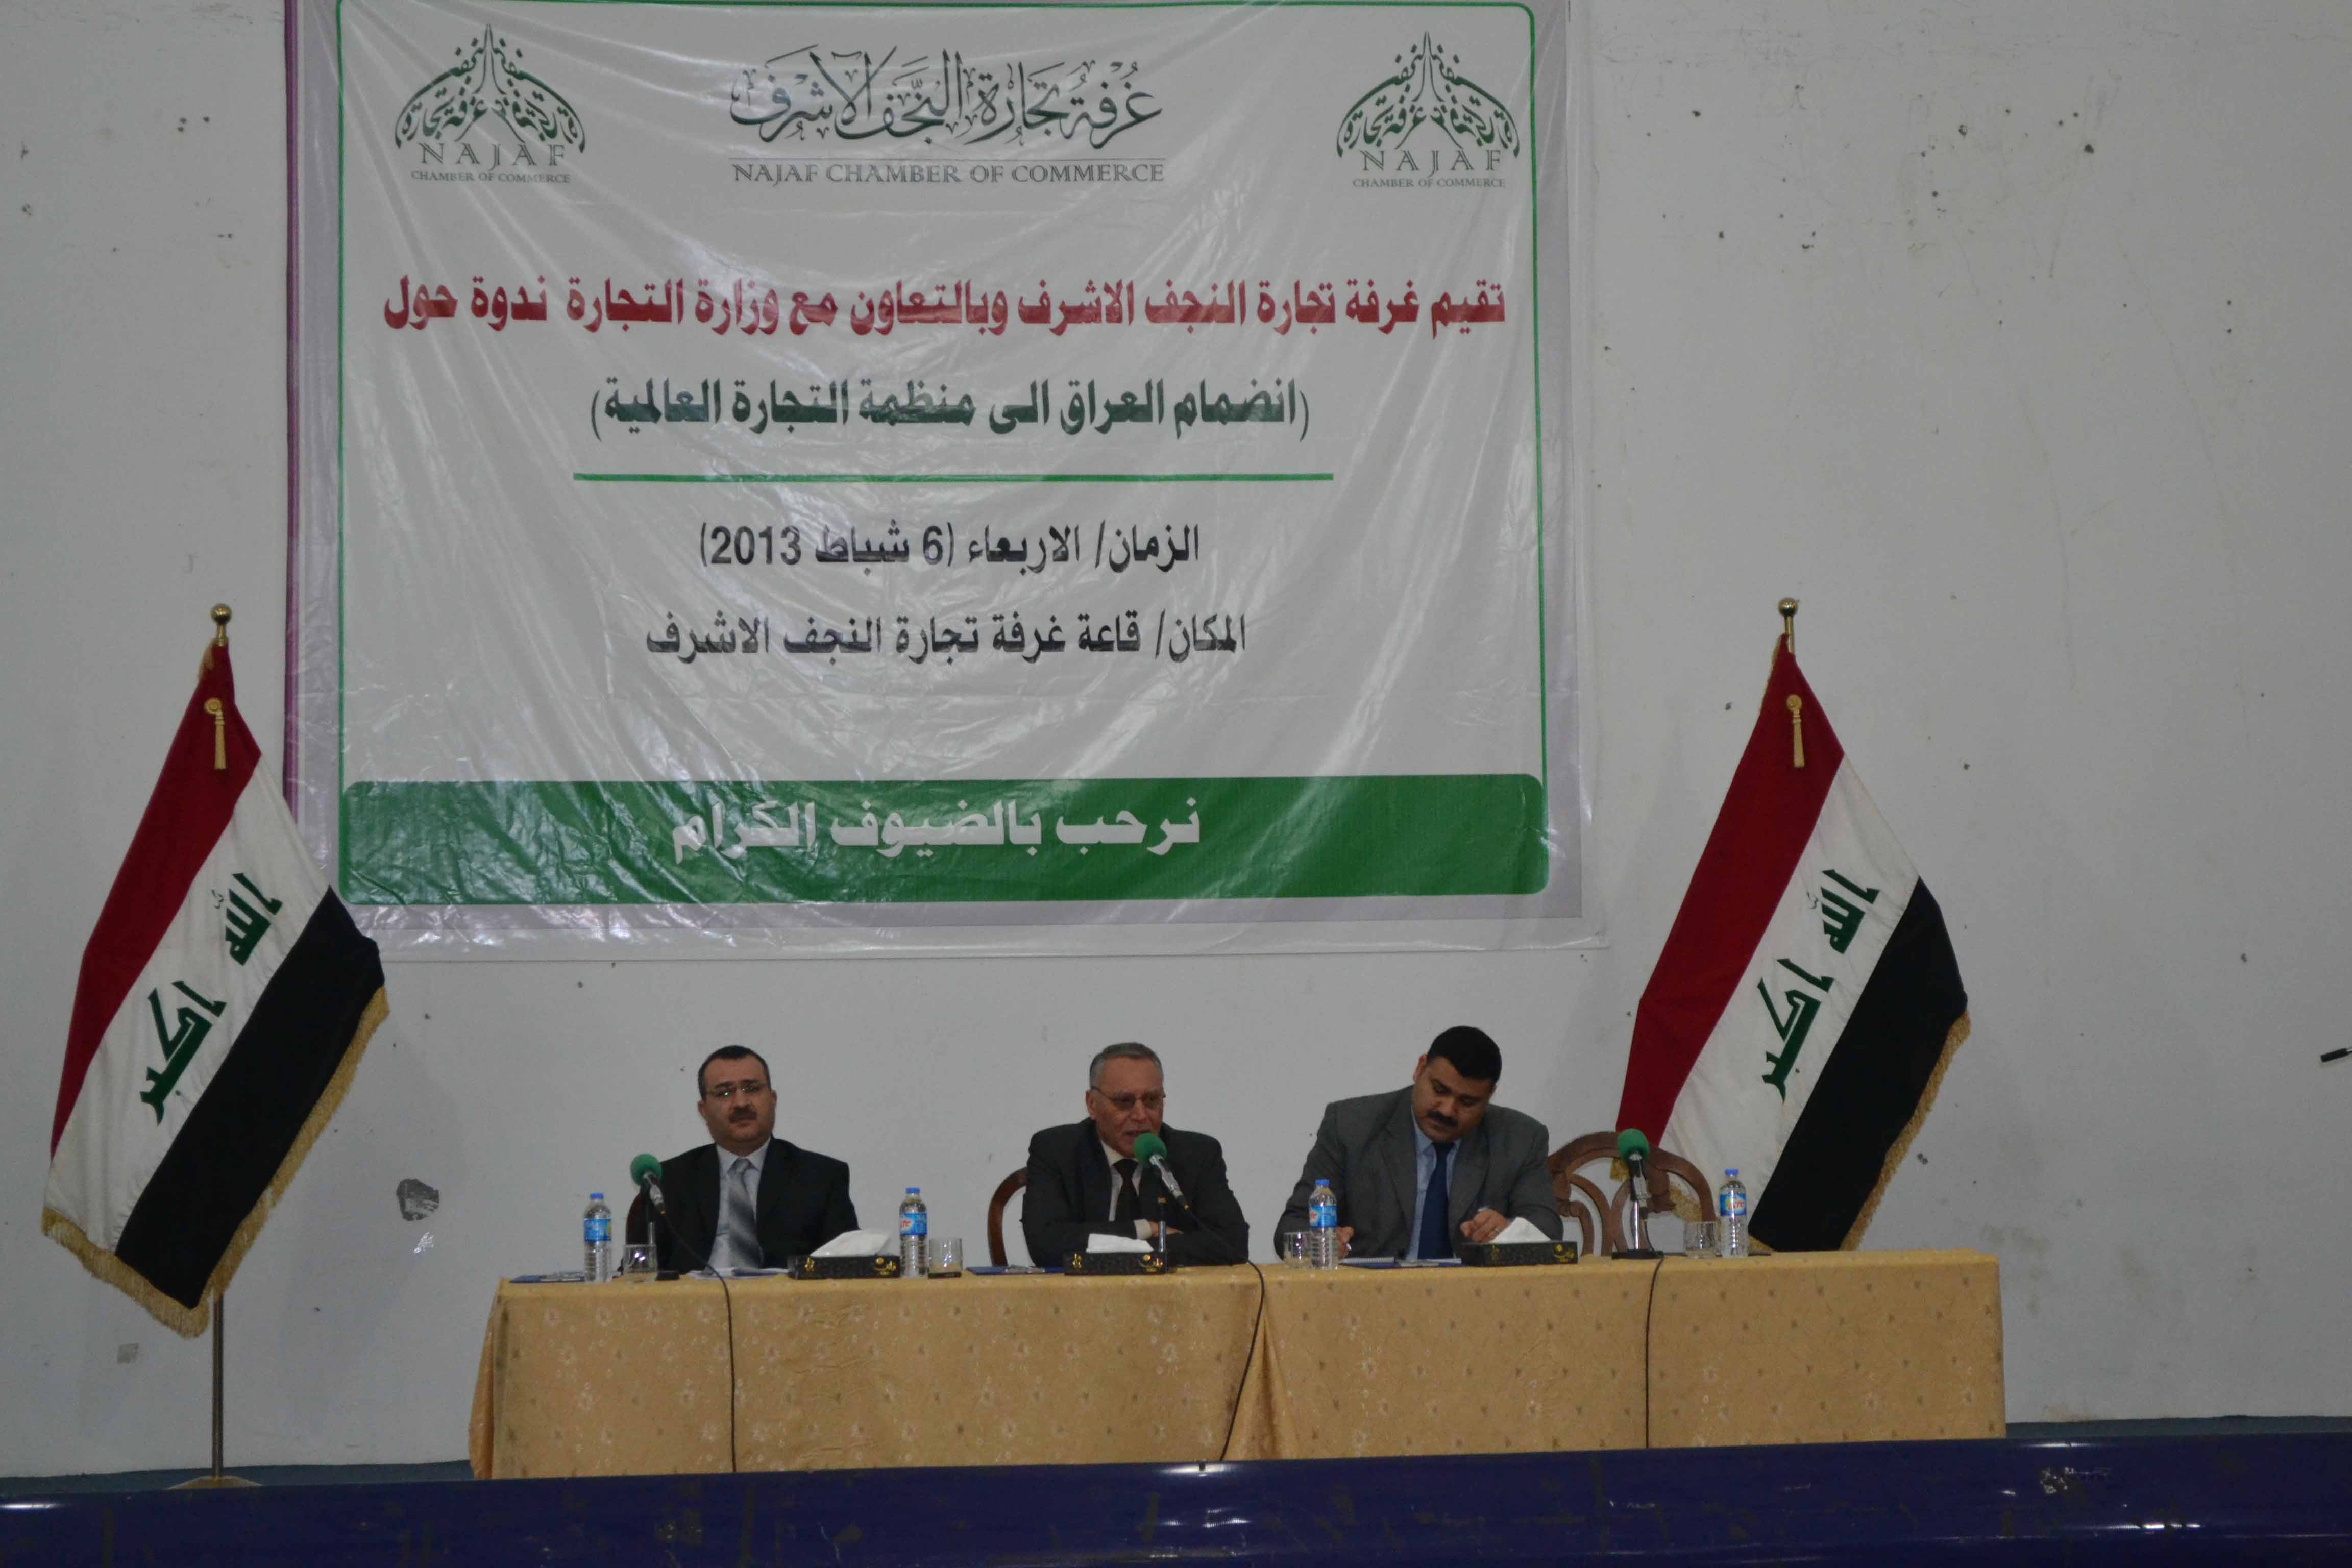 غرفة النجف تنشر التوعية حول انضمام العراق الى منظمة التجارة العالمية